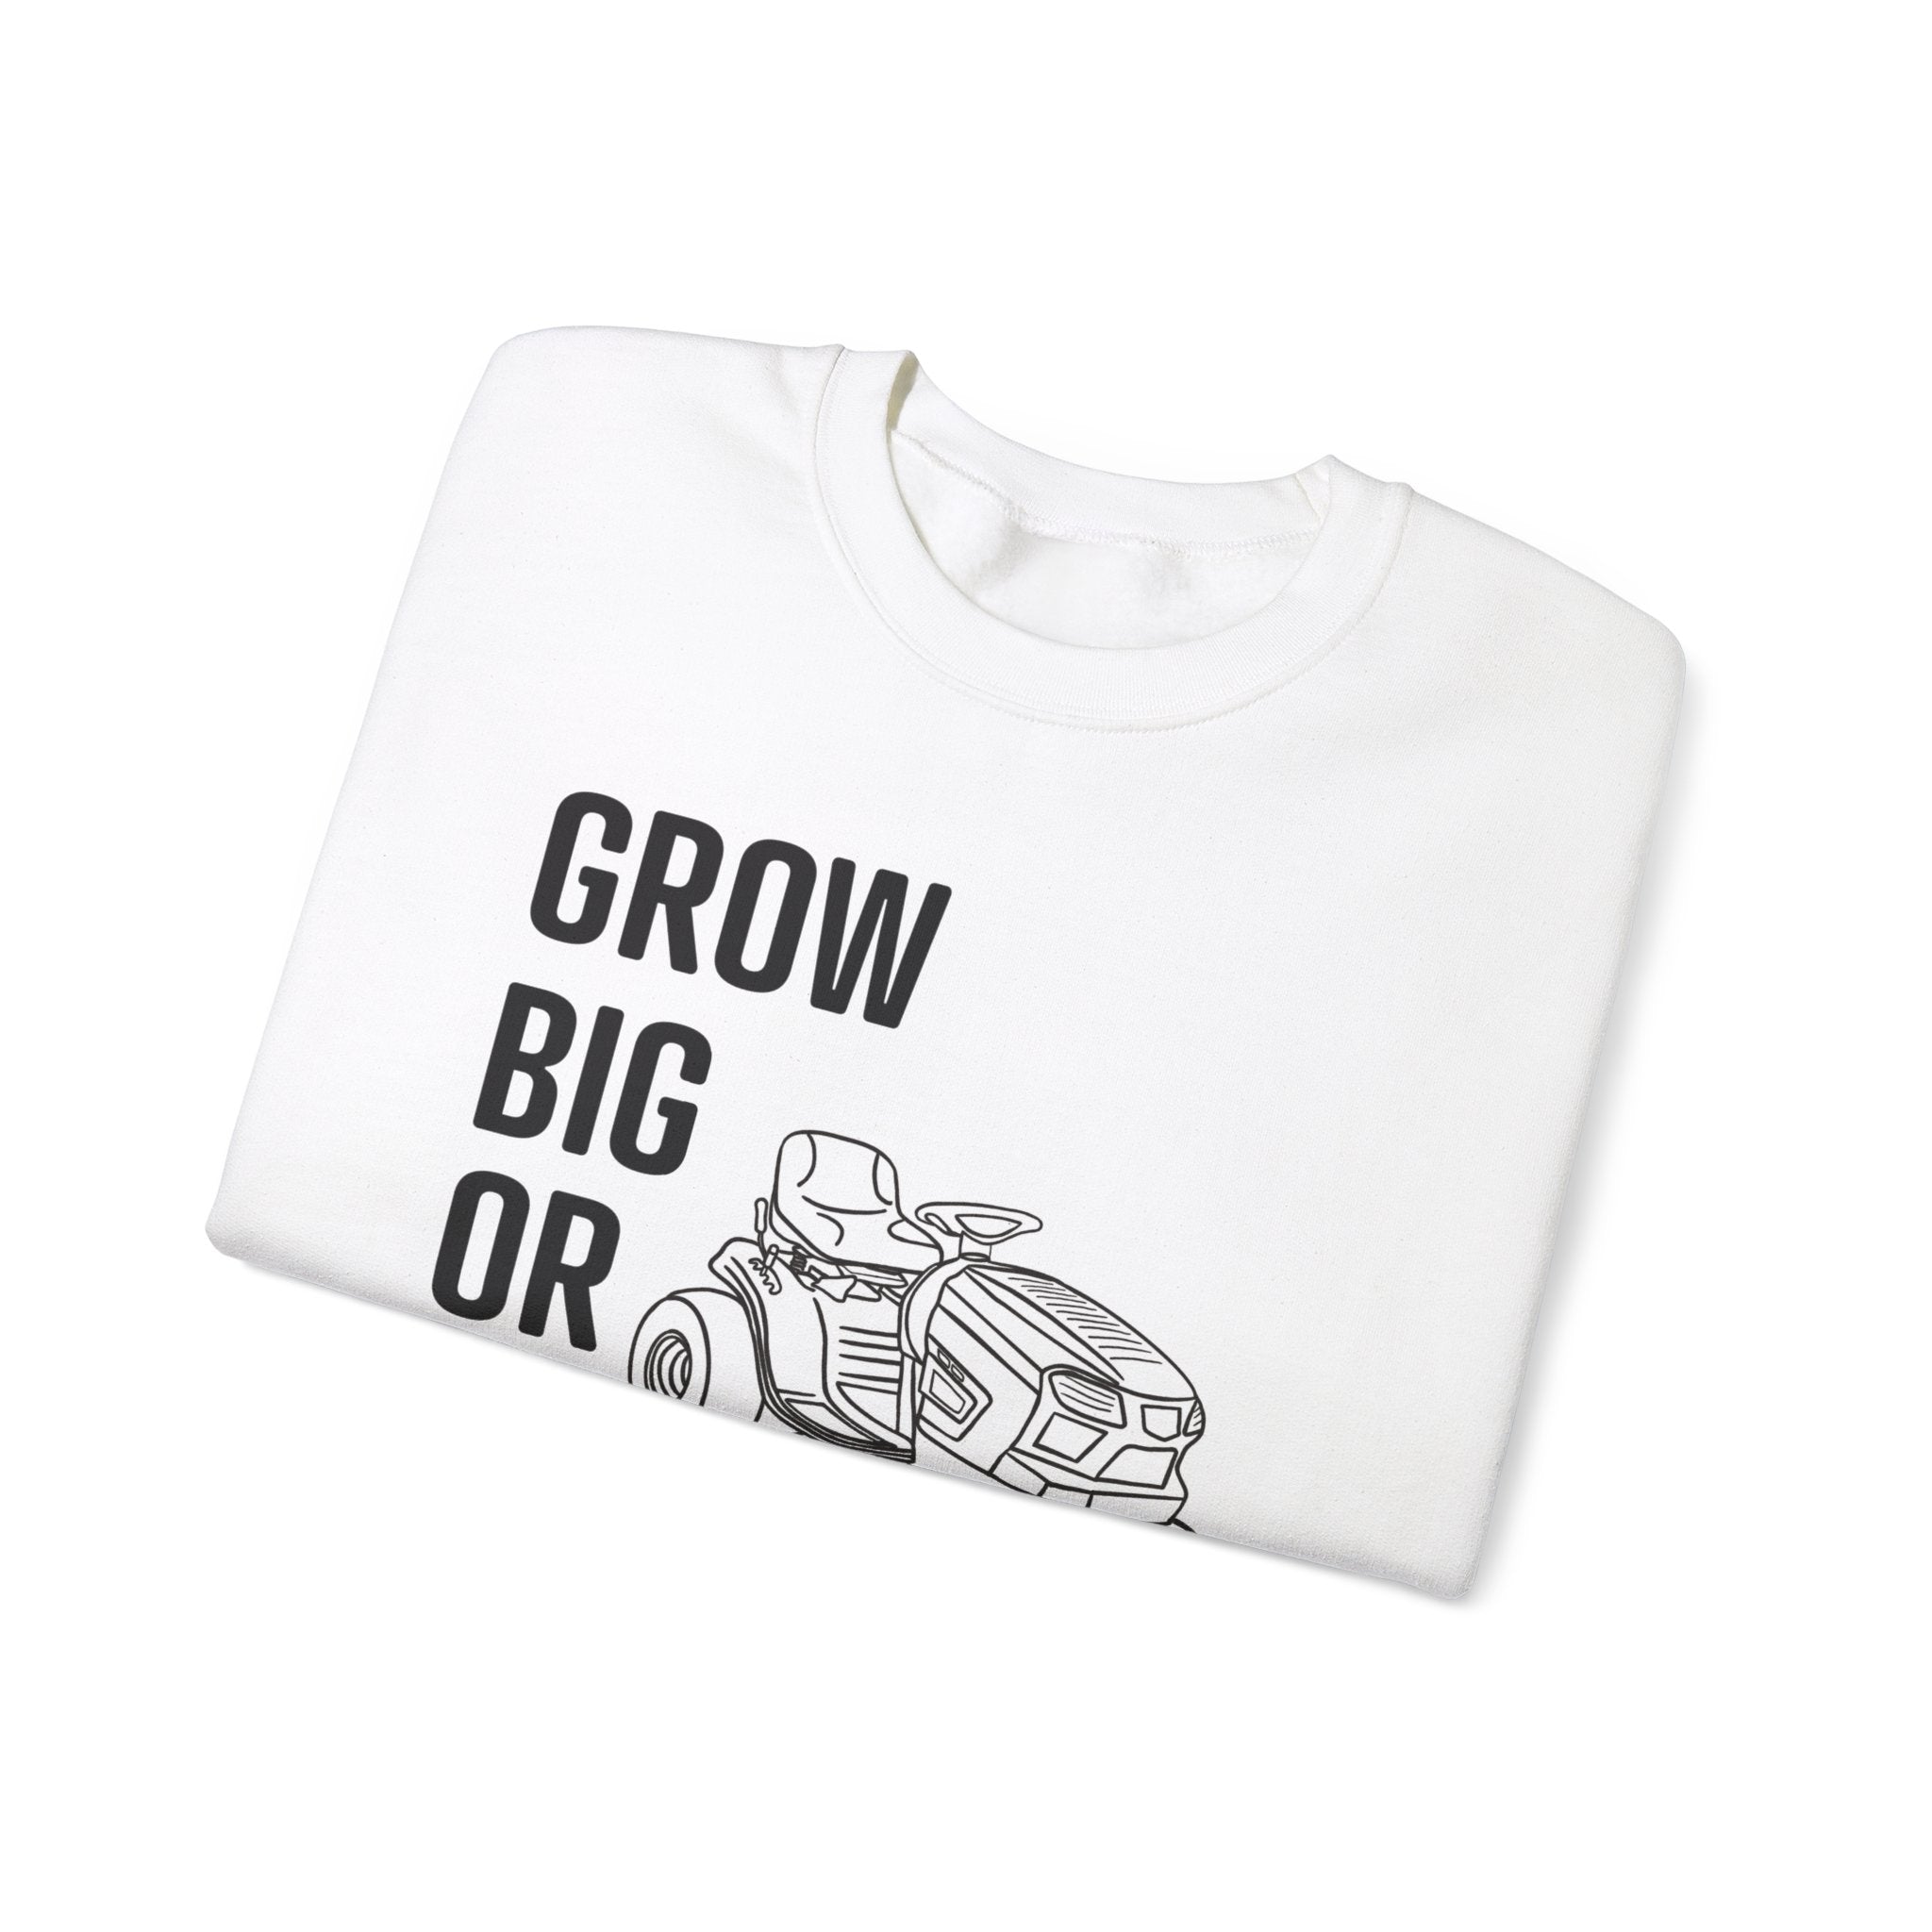 Grow Big or Go Home - Trimyxs